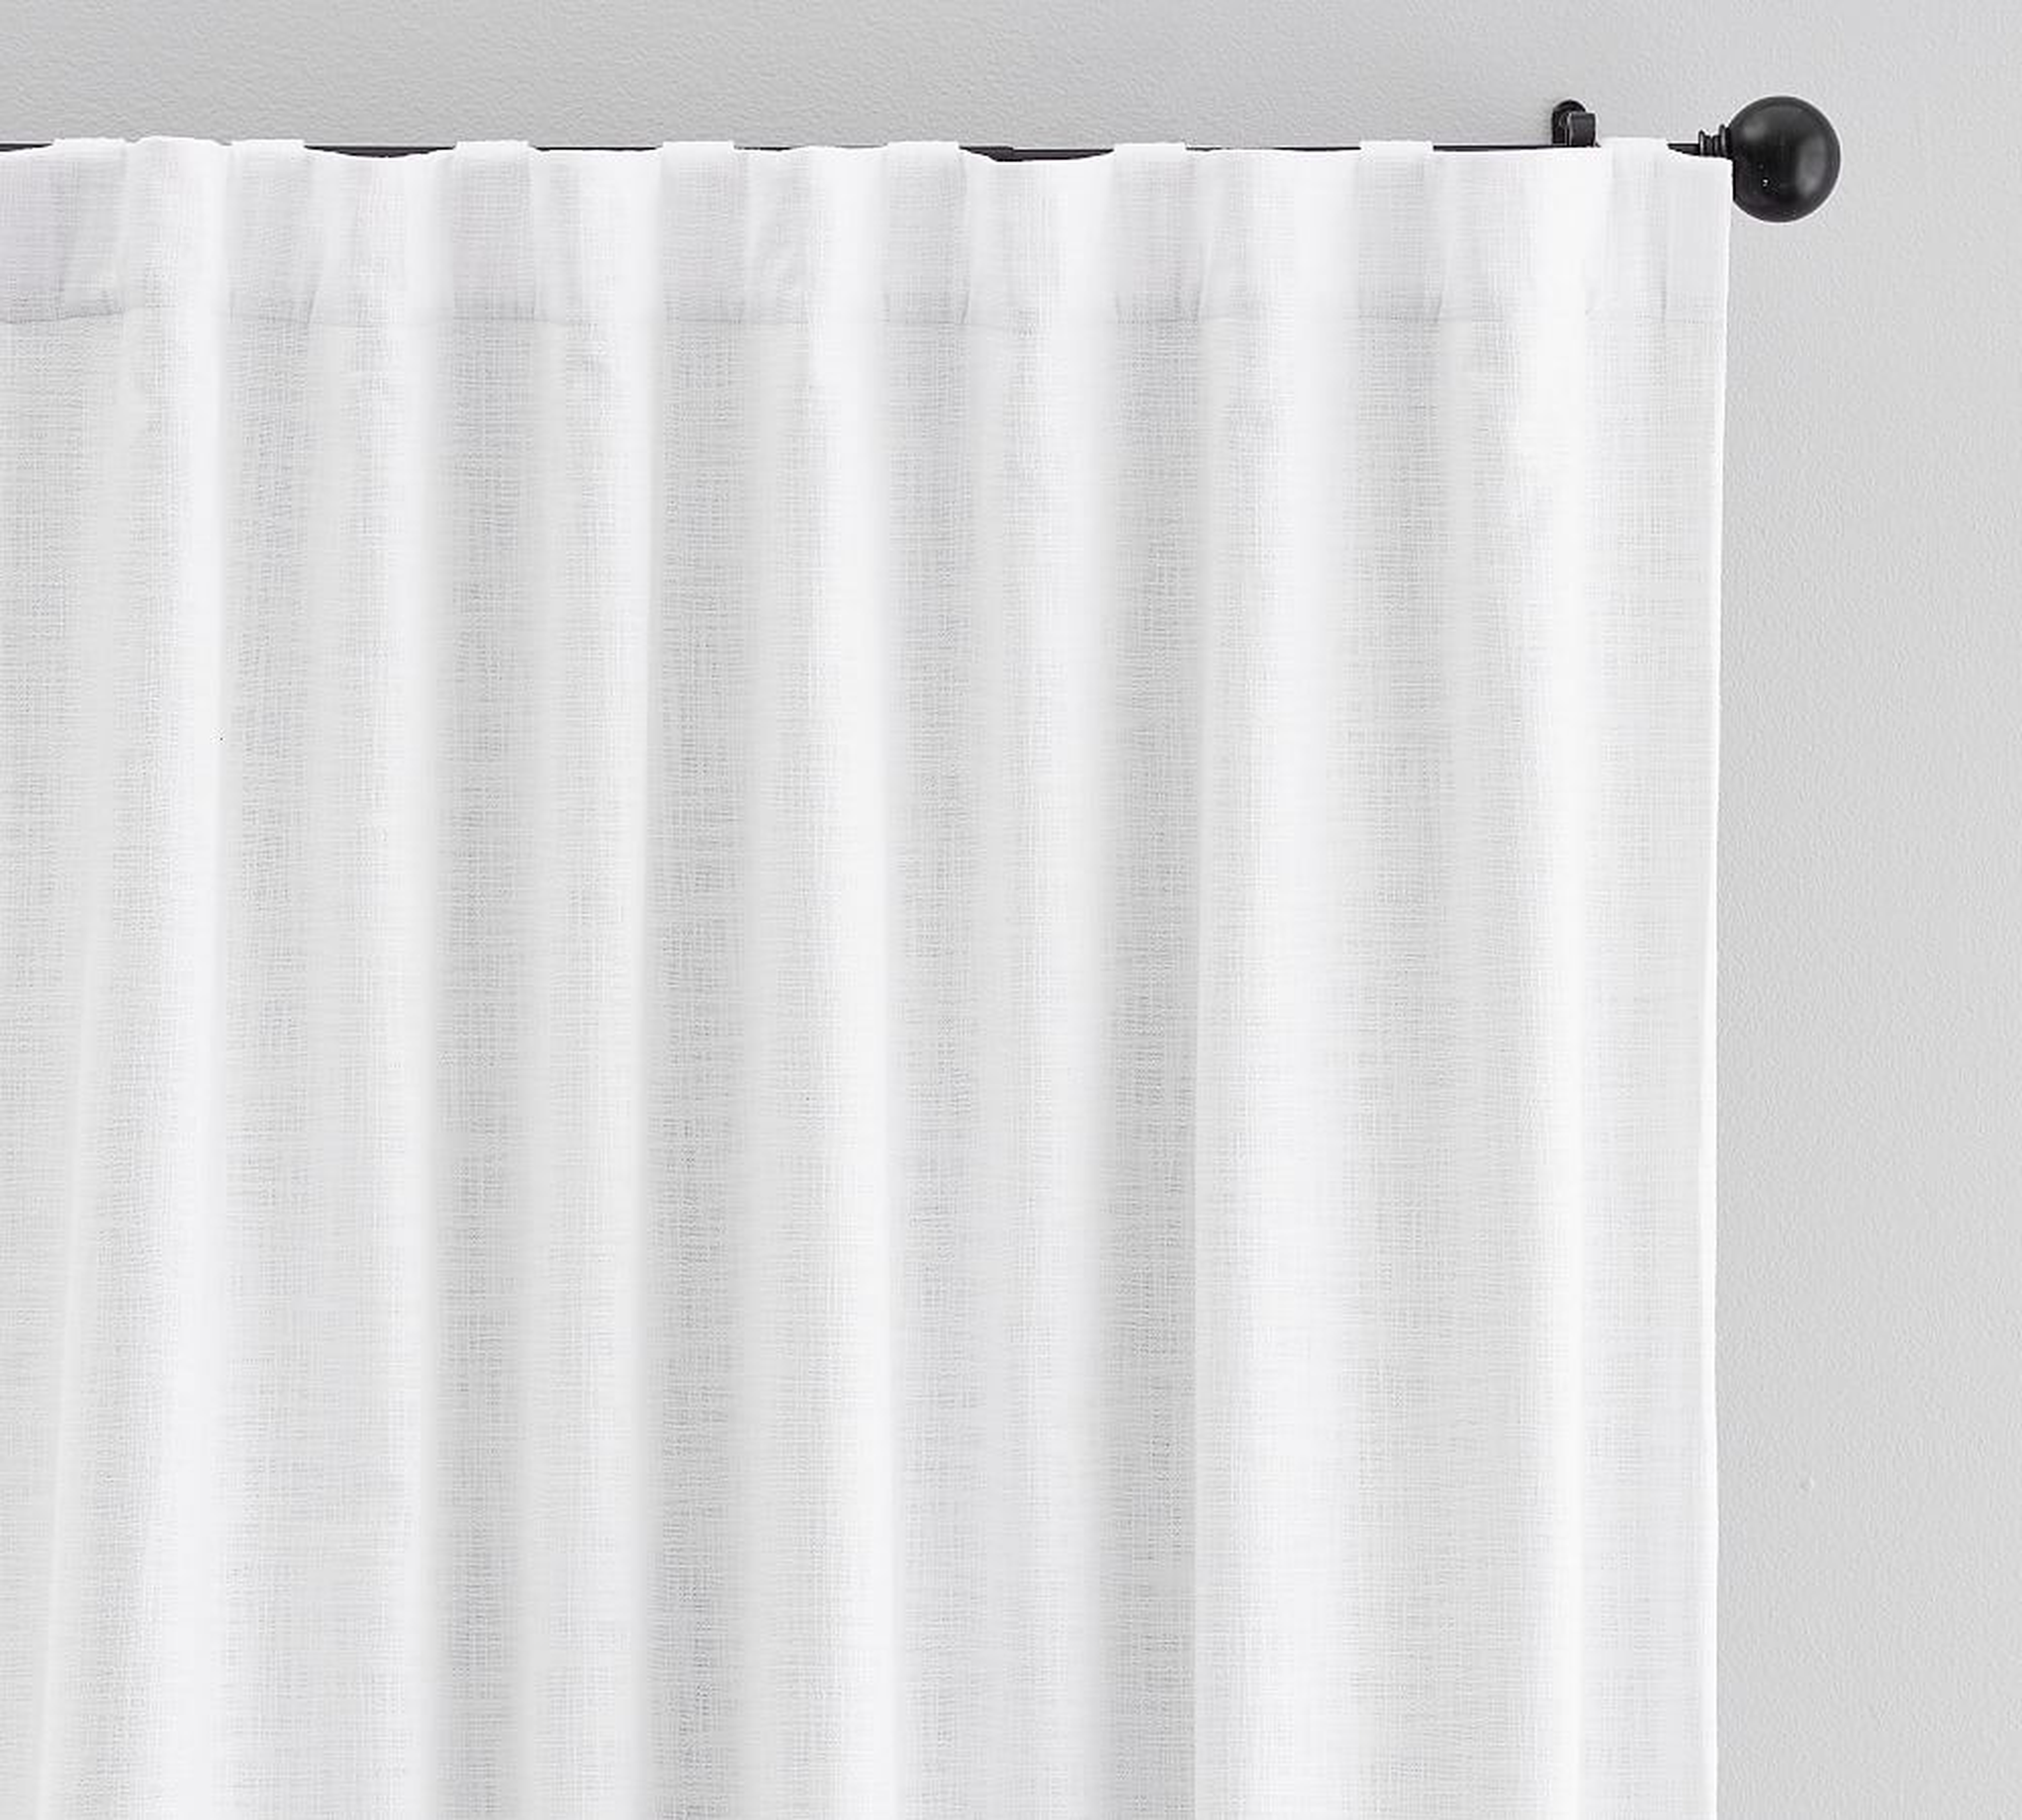 Seaton Textured Cotton Blackout Curtain, 100 x 108", White - Pottery Barn